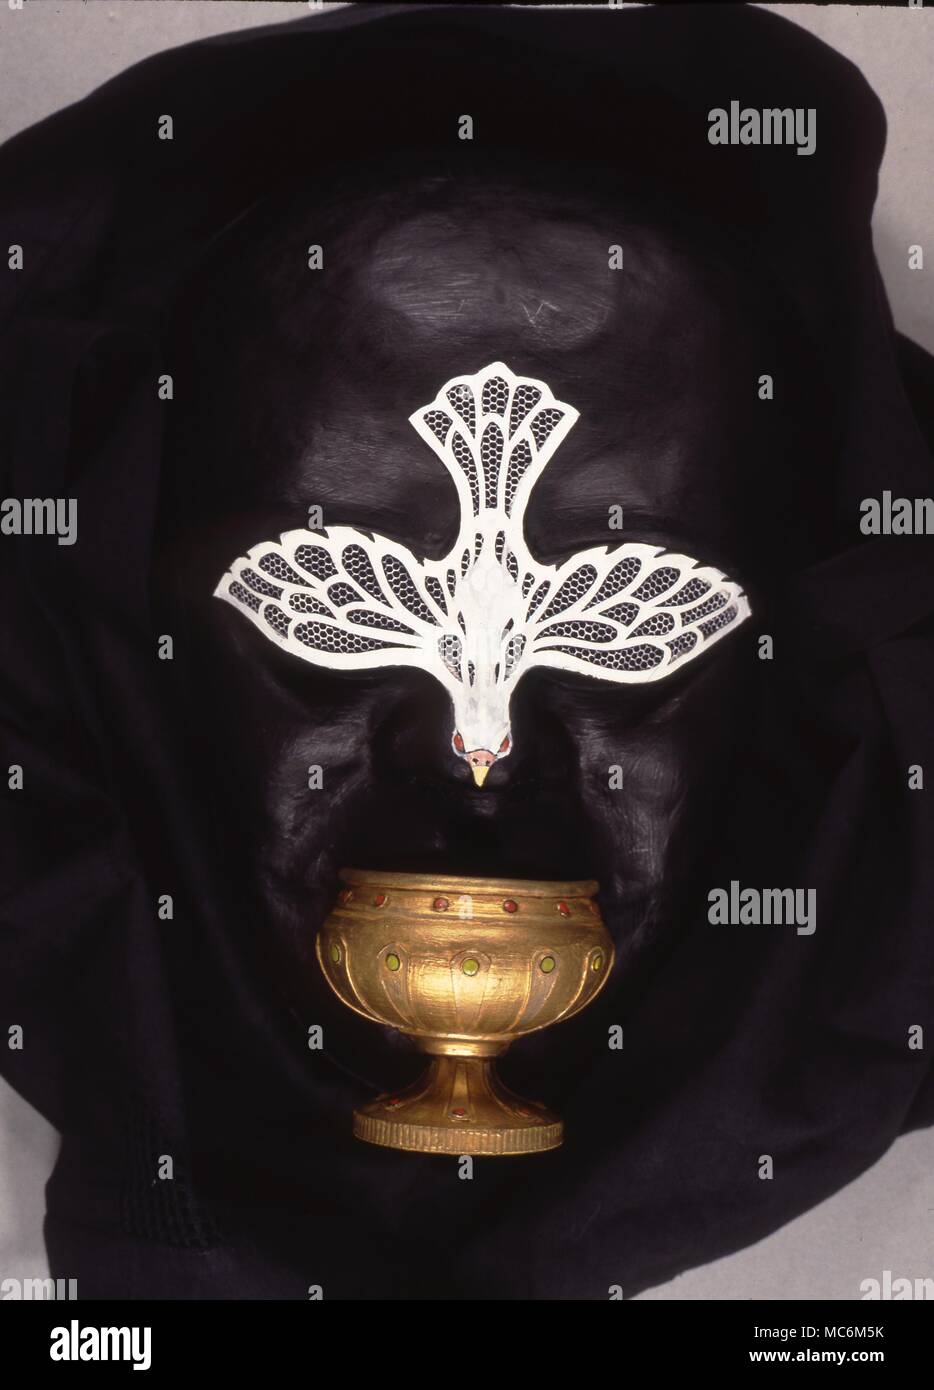 Masque rituel en ordre décroissant avec colombe et réceptifs chalice.Il est porté lors de certains rituels wicca. Banque D'Images